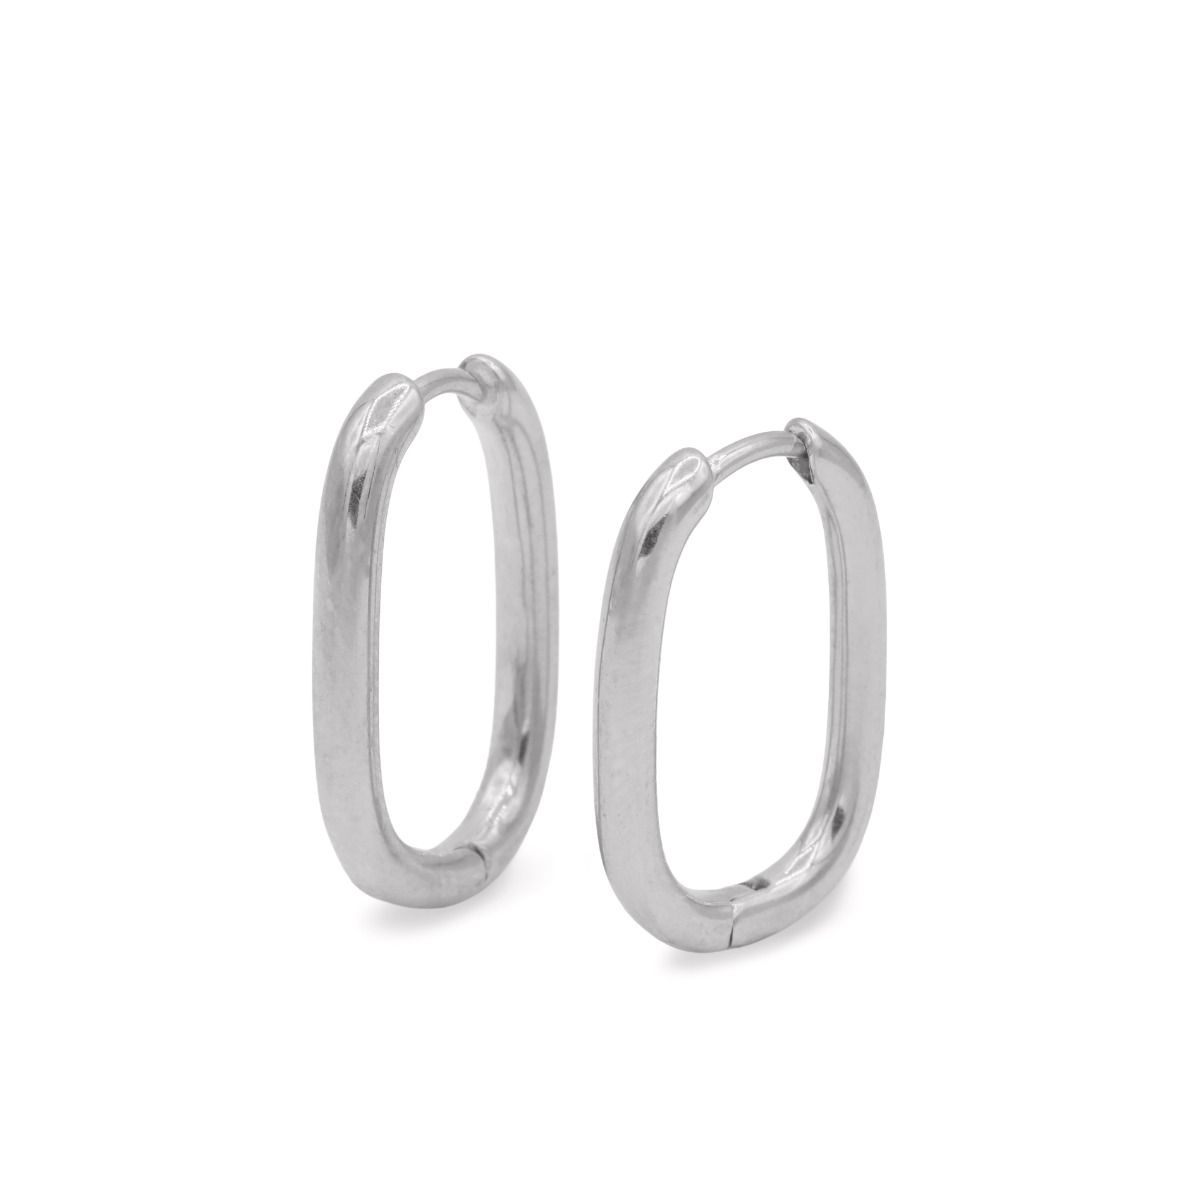 Rectangular 304 Stainless Steel Earring Studs, Silver Tone Earring Studs,  Geometric Earring Wire, Steel Earring Blanks, DIY Earrings (0678)